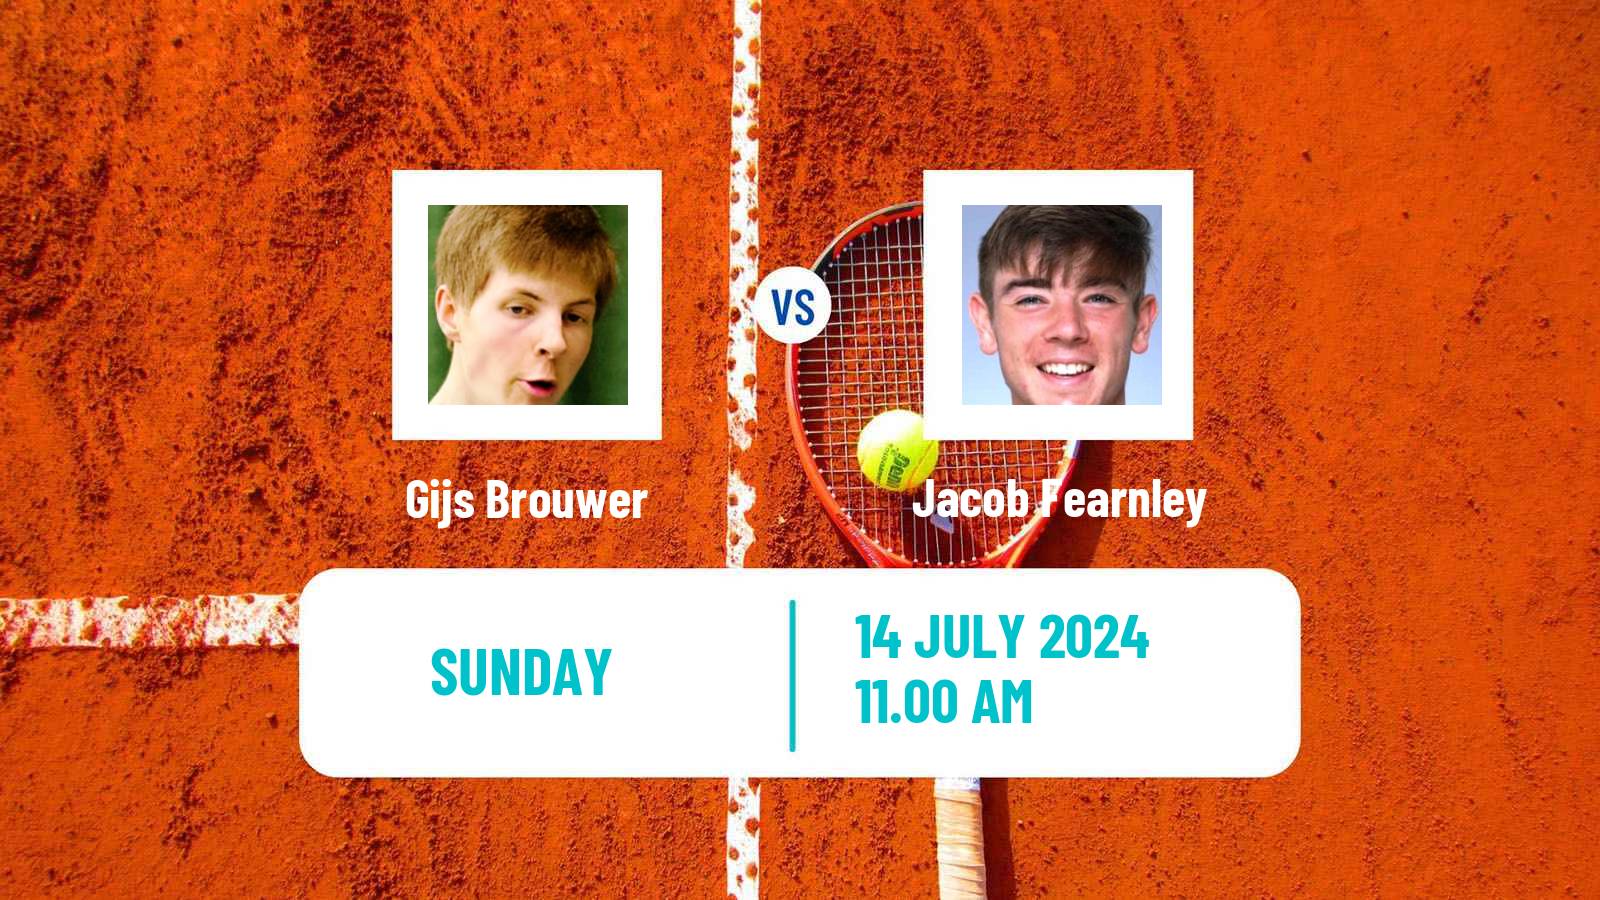 Tennis ATP Newport Gijs Brouwer - Jacob Fearnley